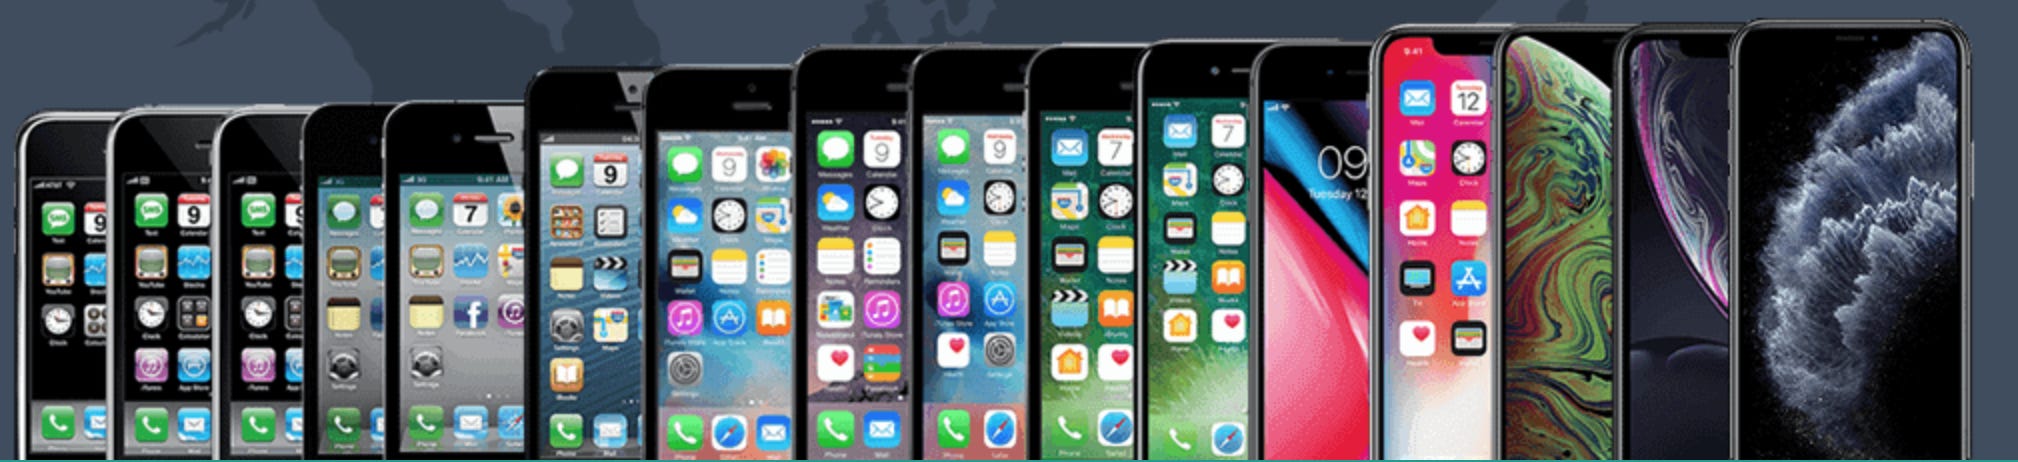 Какого выпуска айфон. Вся линейка Эппл айфонов. Apple iphone 14 линейка. Эволюция Эппл айфон. Айфоны от 1 до 11.